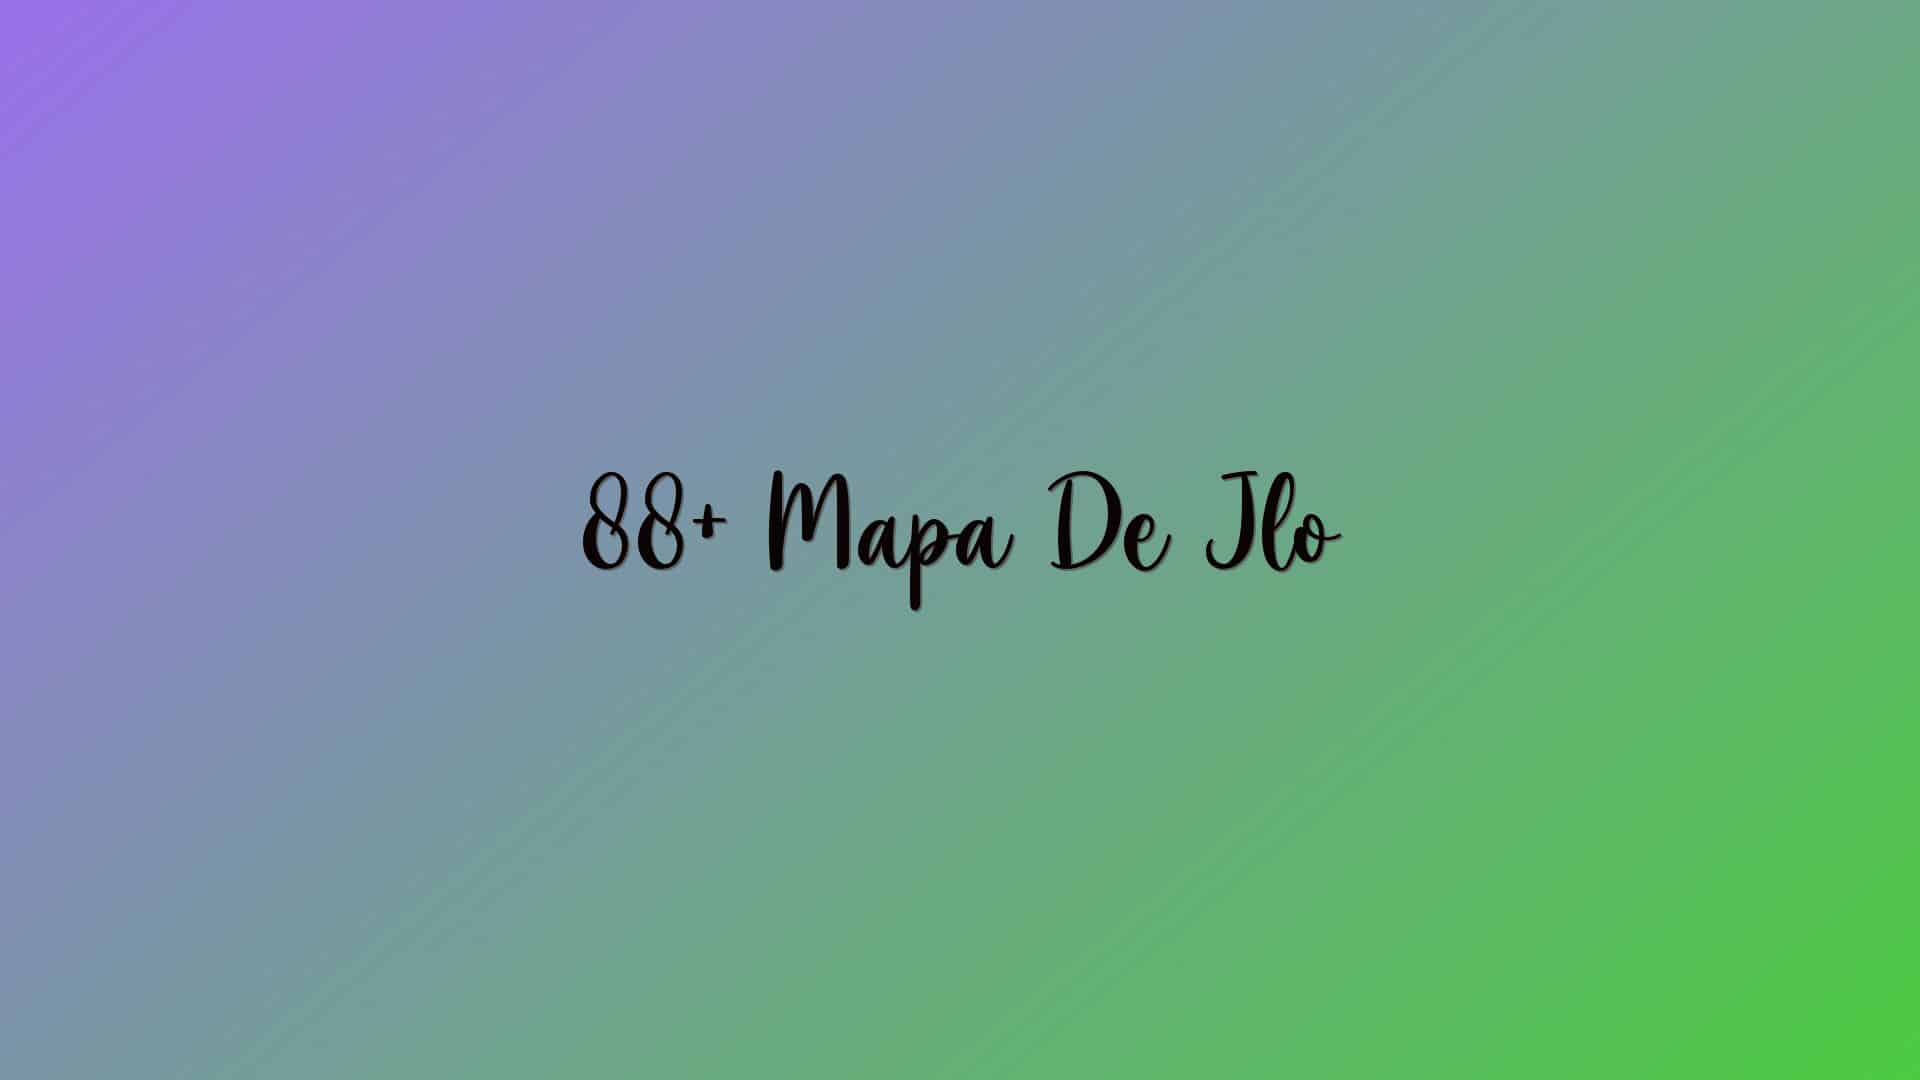 88+ Mapa De Jlo